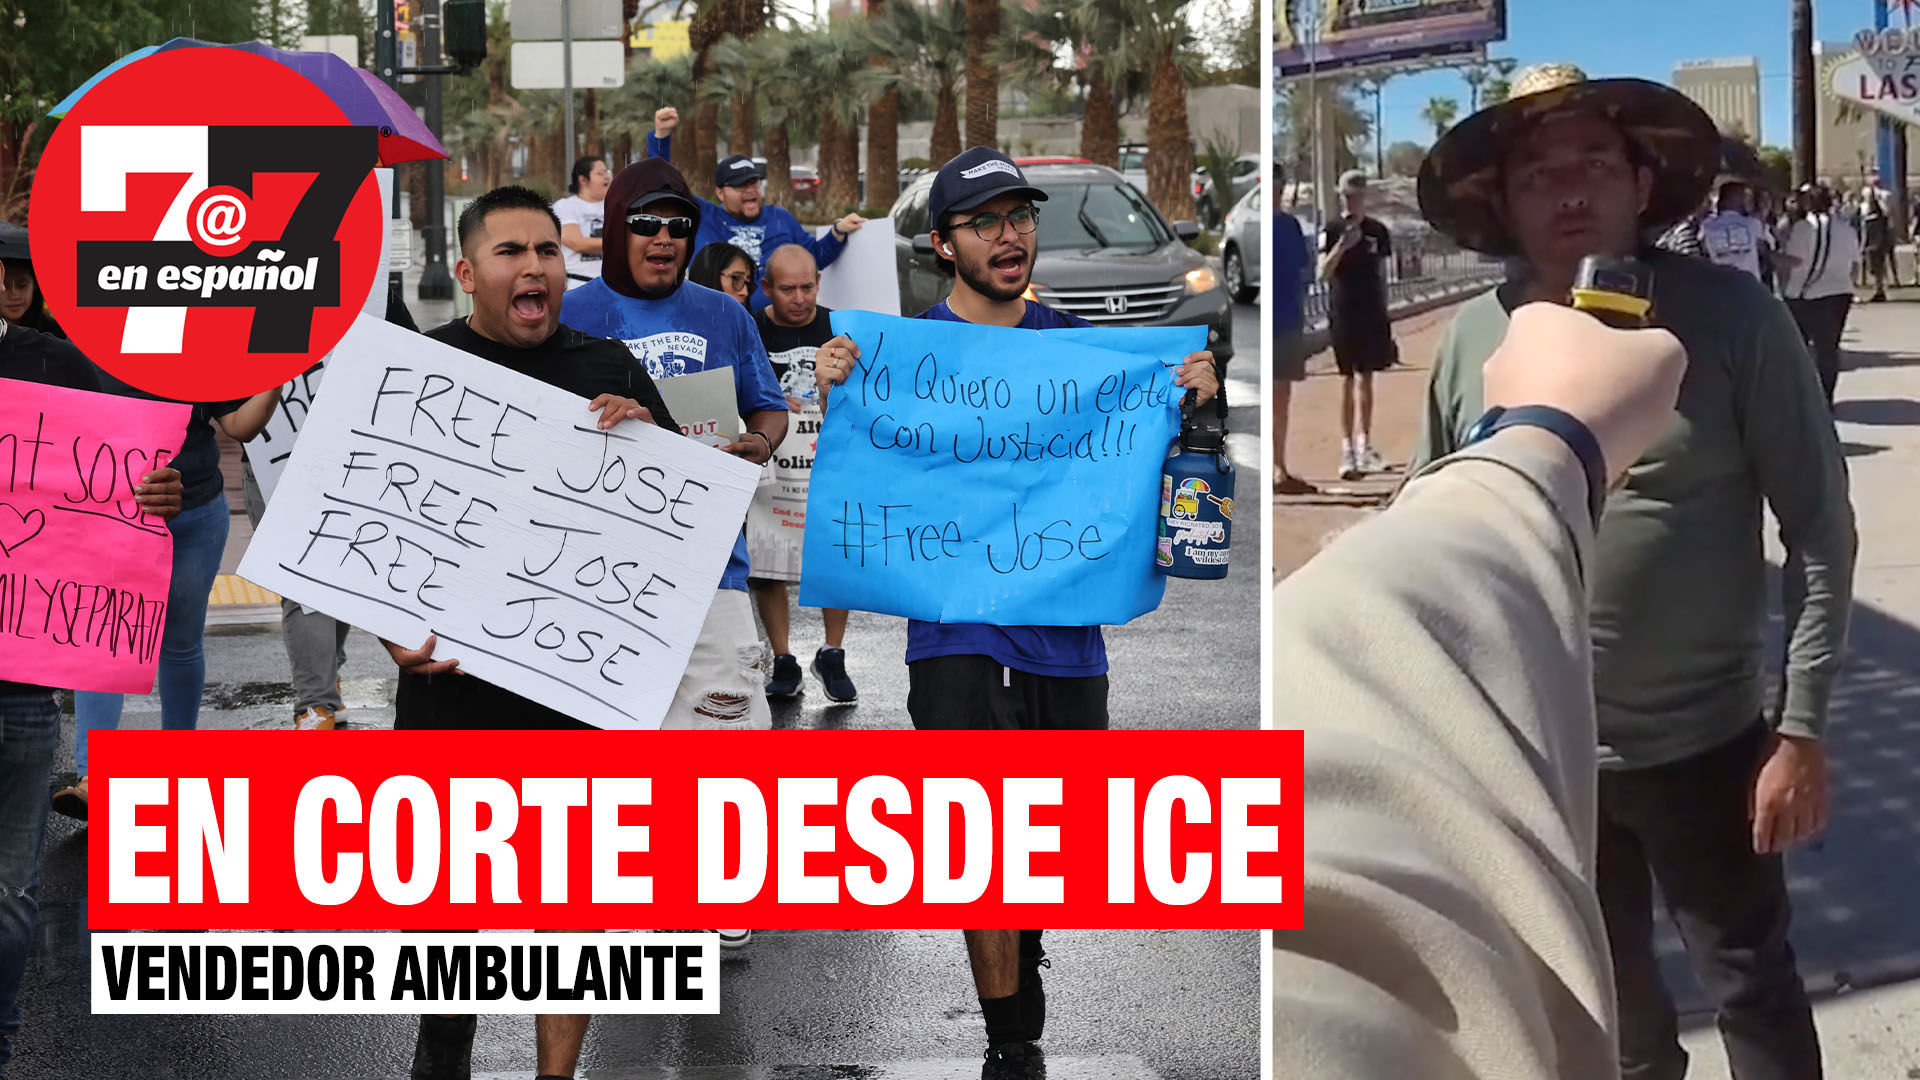 Noticias de Las Vegas | Vendedor ambulante en corte desde ICE tras incidente con policía